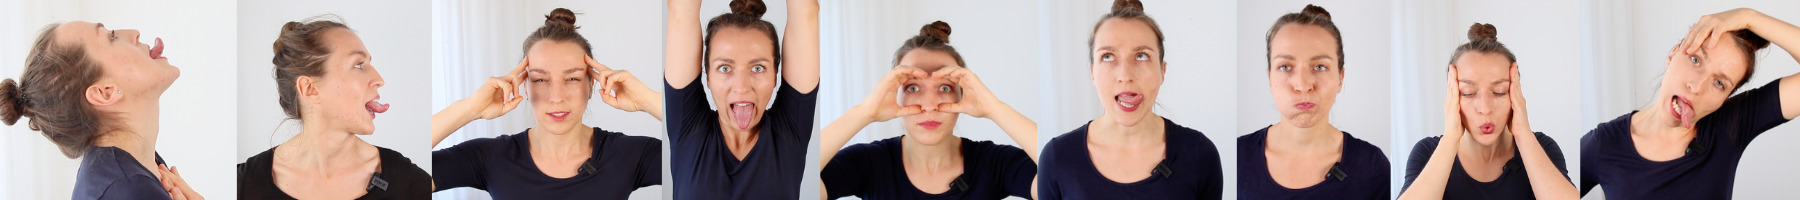 Übungen-Gesicht-Training-Übersicht-alle-face-yoga-gesicht-straffen-falten-reduzieren